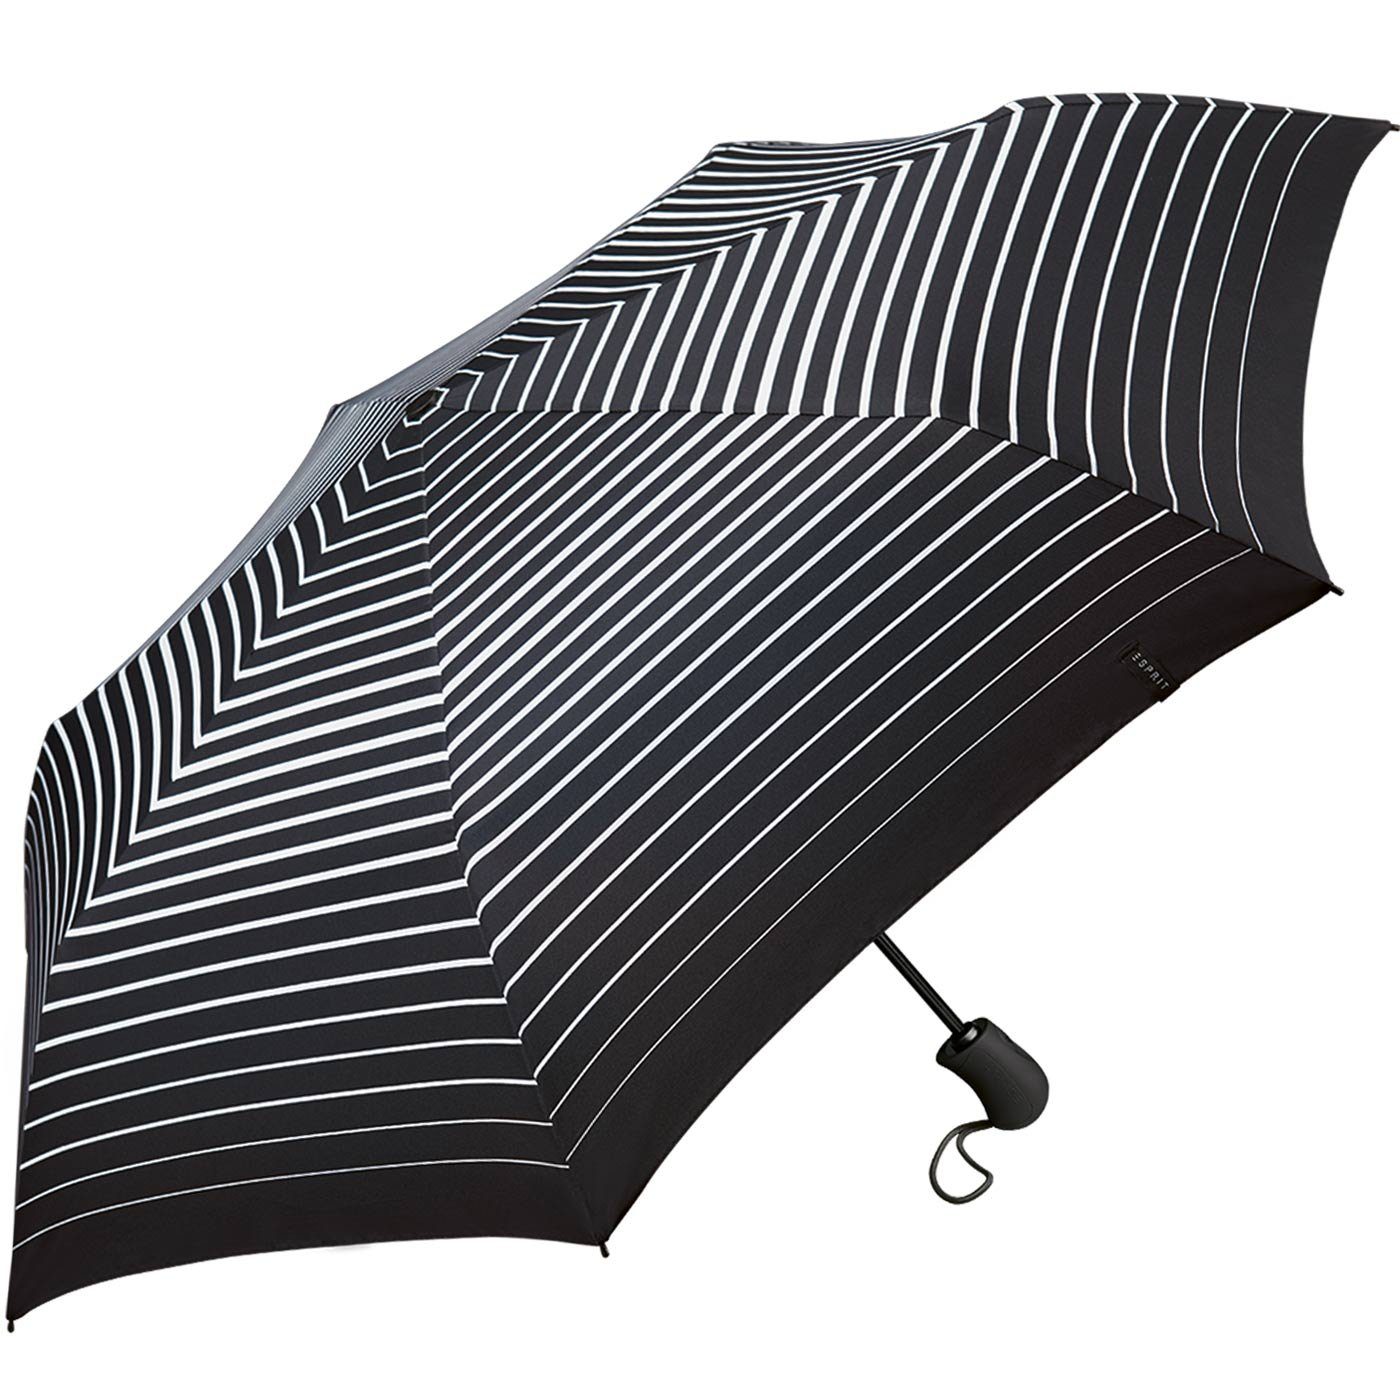 Taschenregenschirm Auf-Zu Degradee stabil, in moderner Streifen-Optik praktisch, Automatik Stripe Light Esprit black, Easymatic - schwarz-weiß